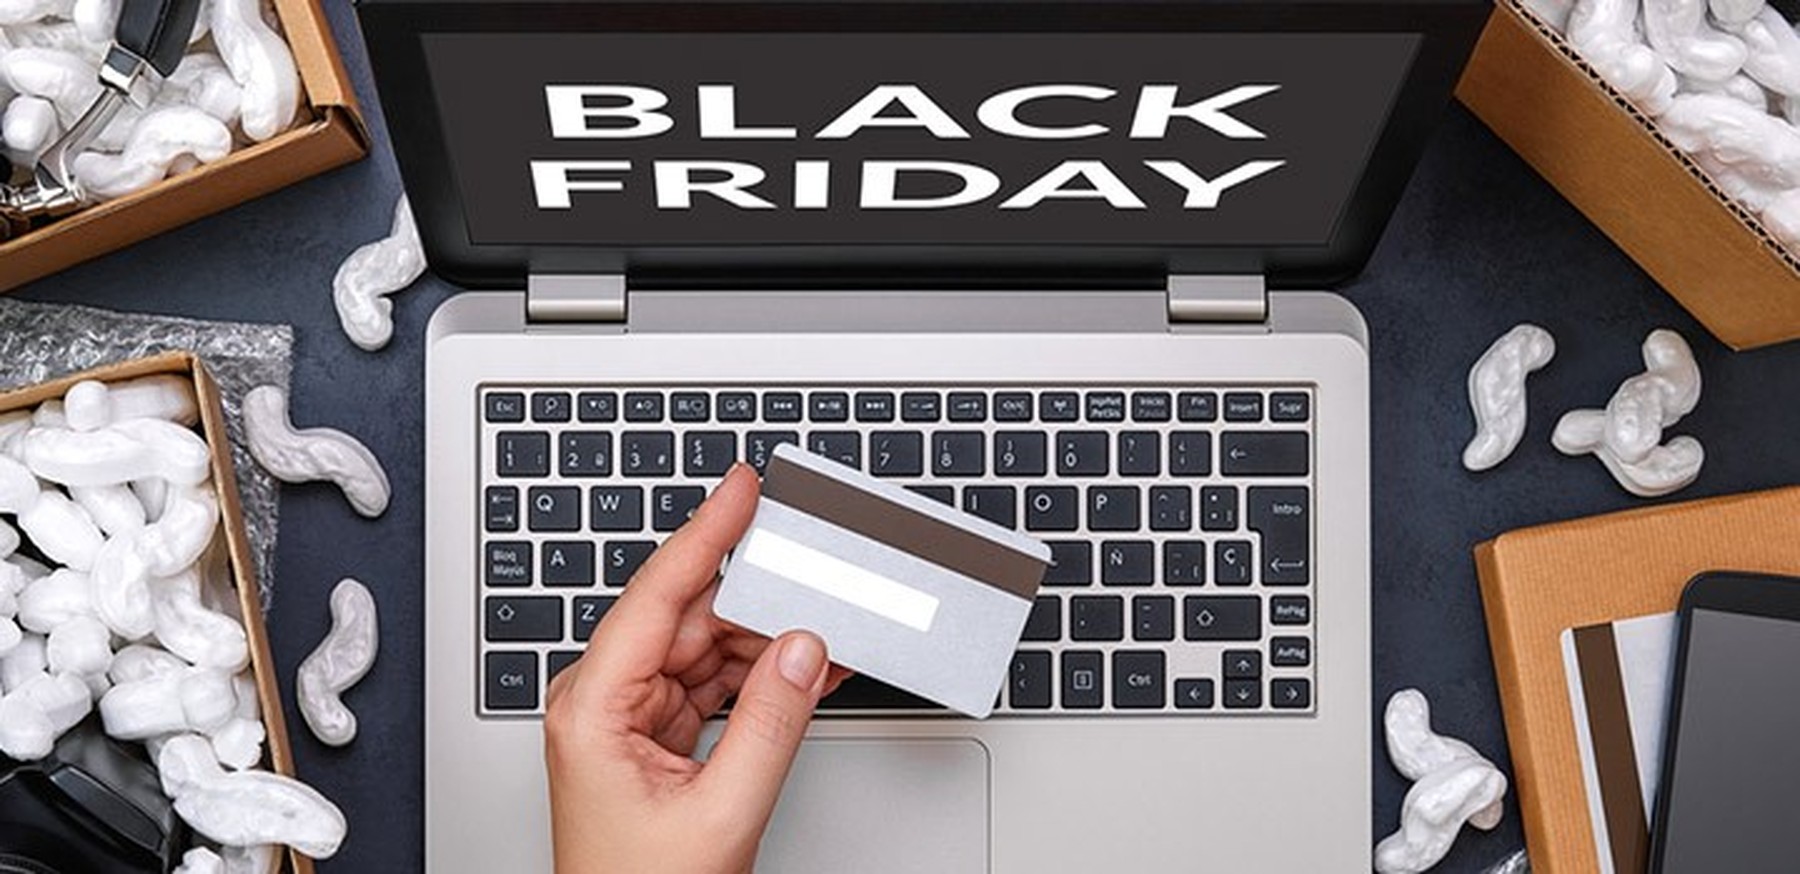 ordenador portátil con Black Friday en la pantalla, una persona con una tarjeta de crédito y cajas de pedidos alrededor